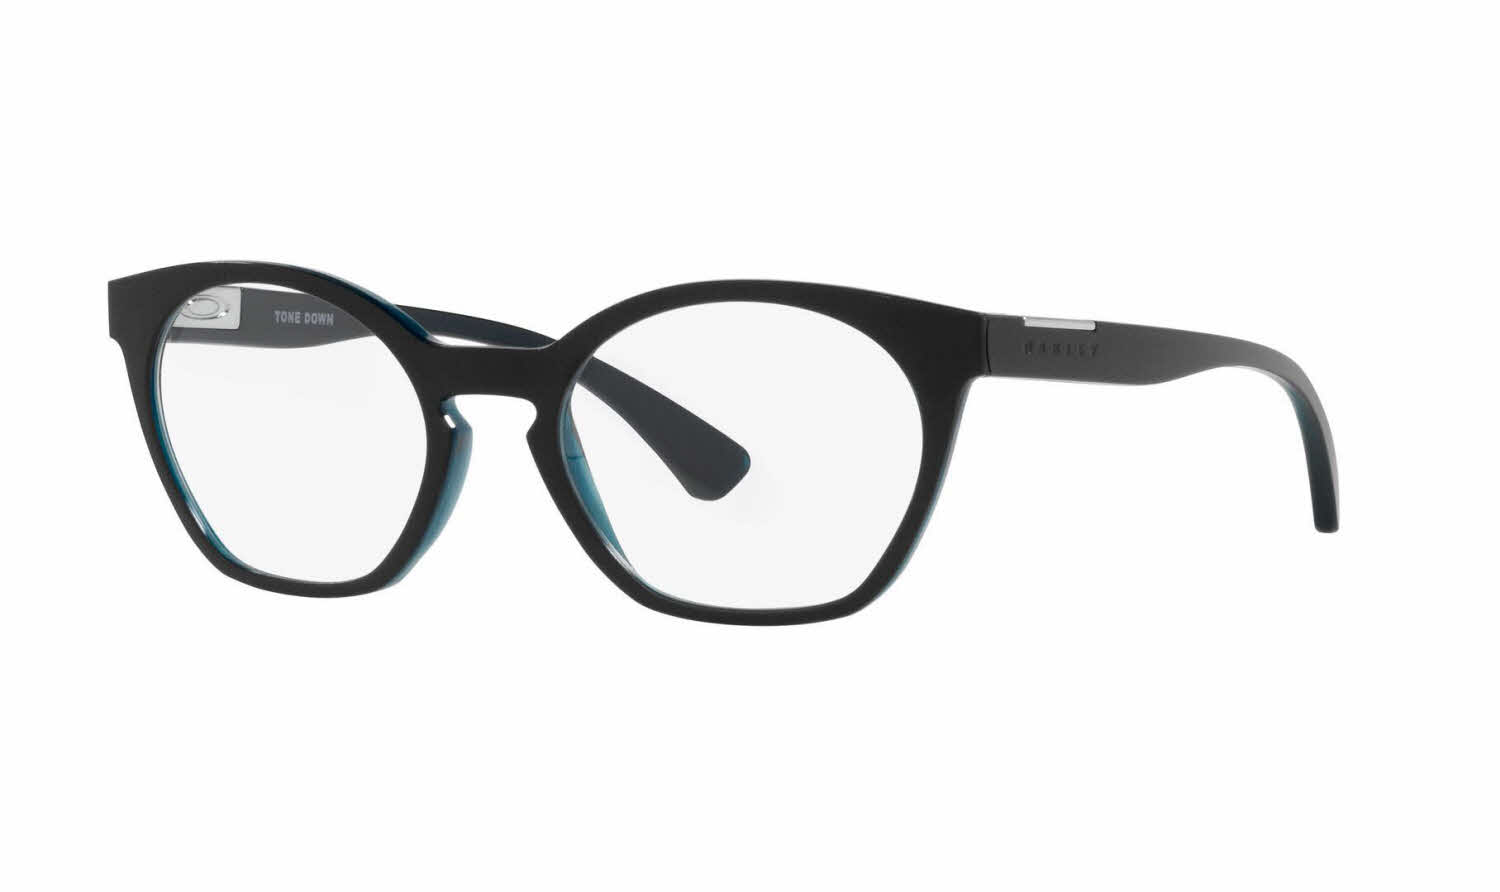 Oakley Tone Down Women's Eyeglasses In Black